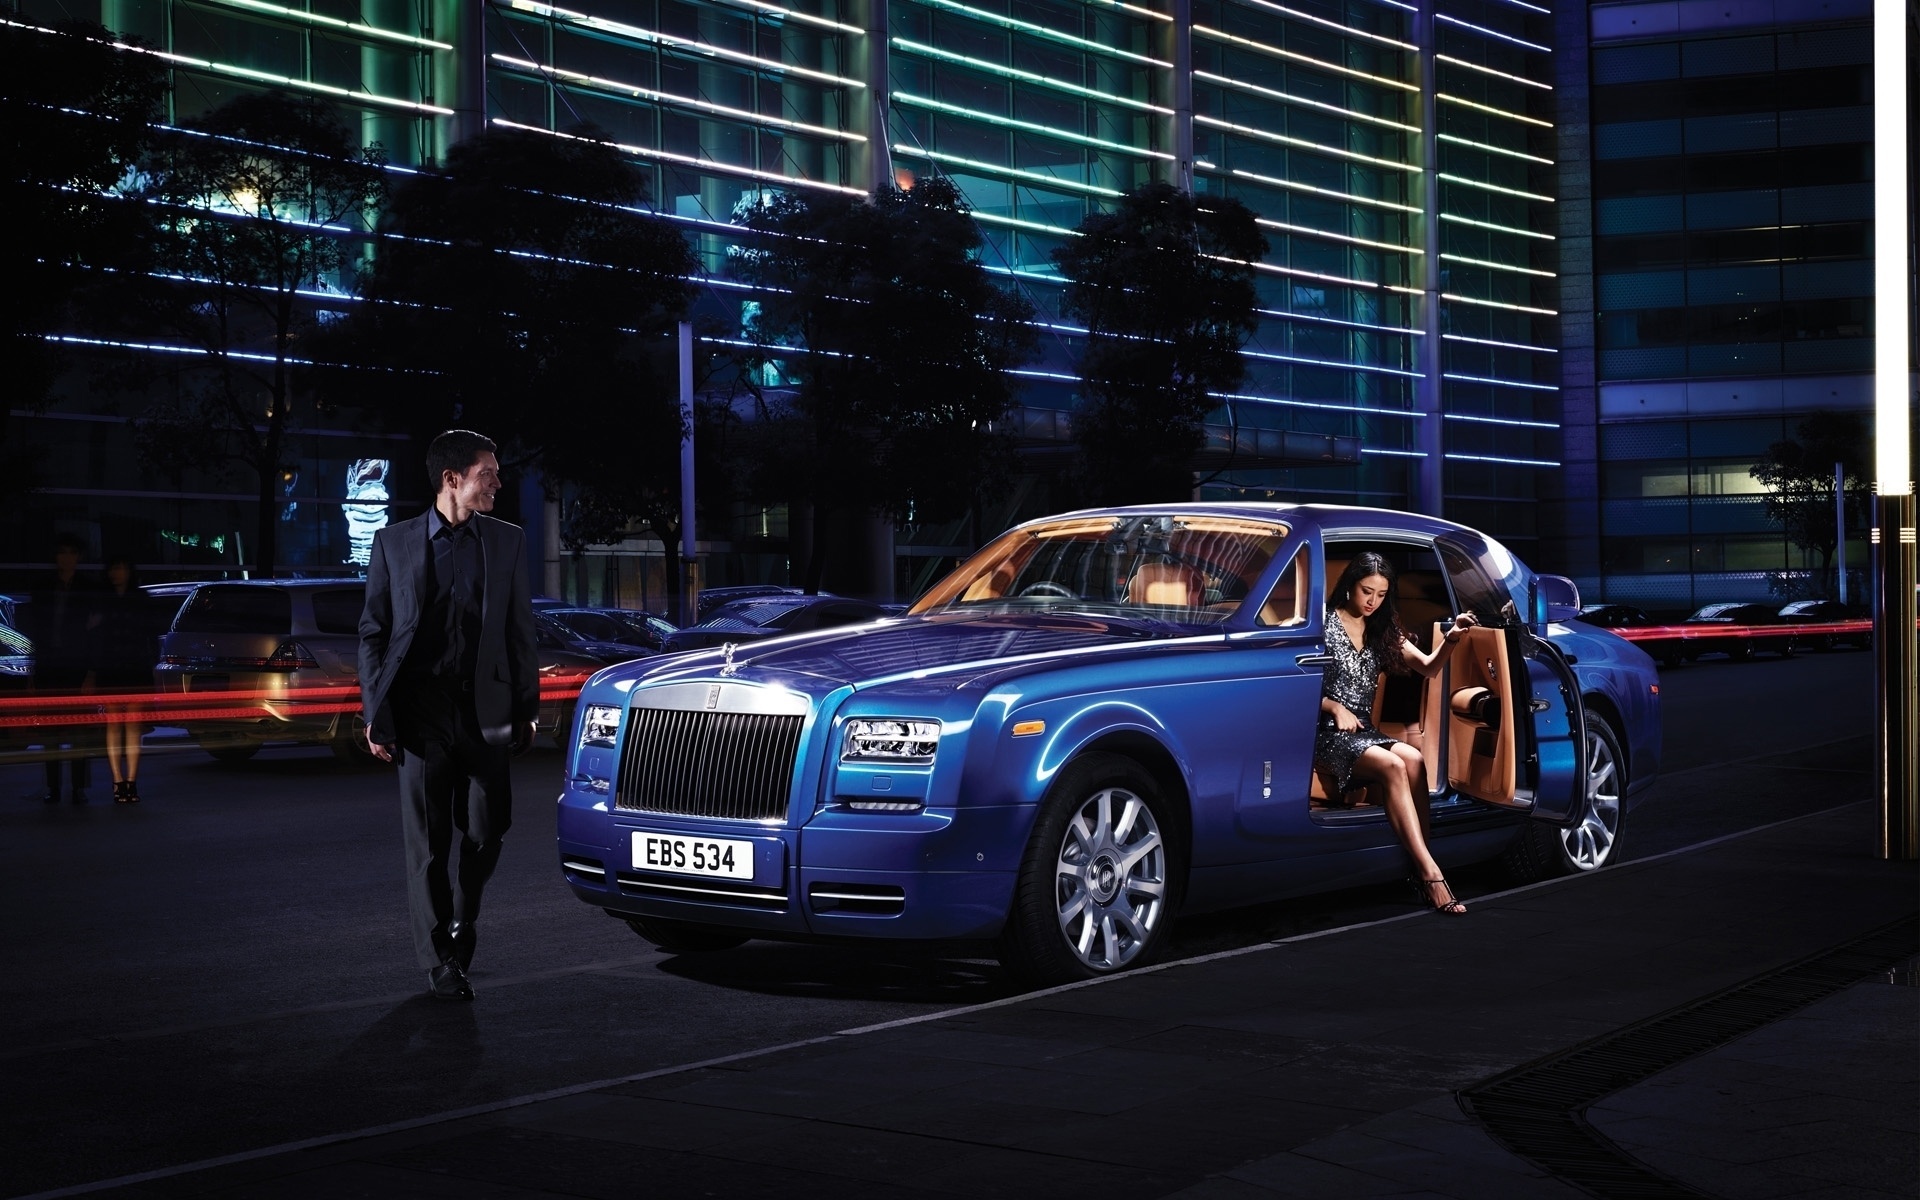 Rolls-Royce, tên gọi đã đủ để gợi lên hình ảnh những chiếc xe sang trọng, đẳng cấp và đầy quyền lực. Hãy để những hình ảnh này lôi cuốn bạn bằng vẻ đẹp và sang trọng của một chiếc xe hạng sang.